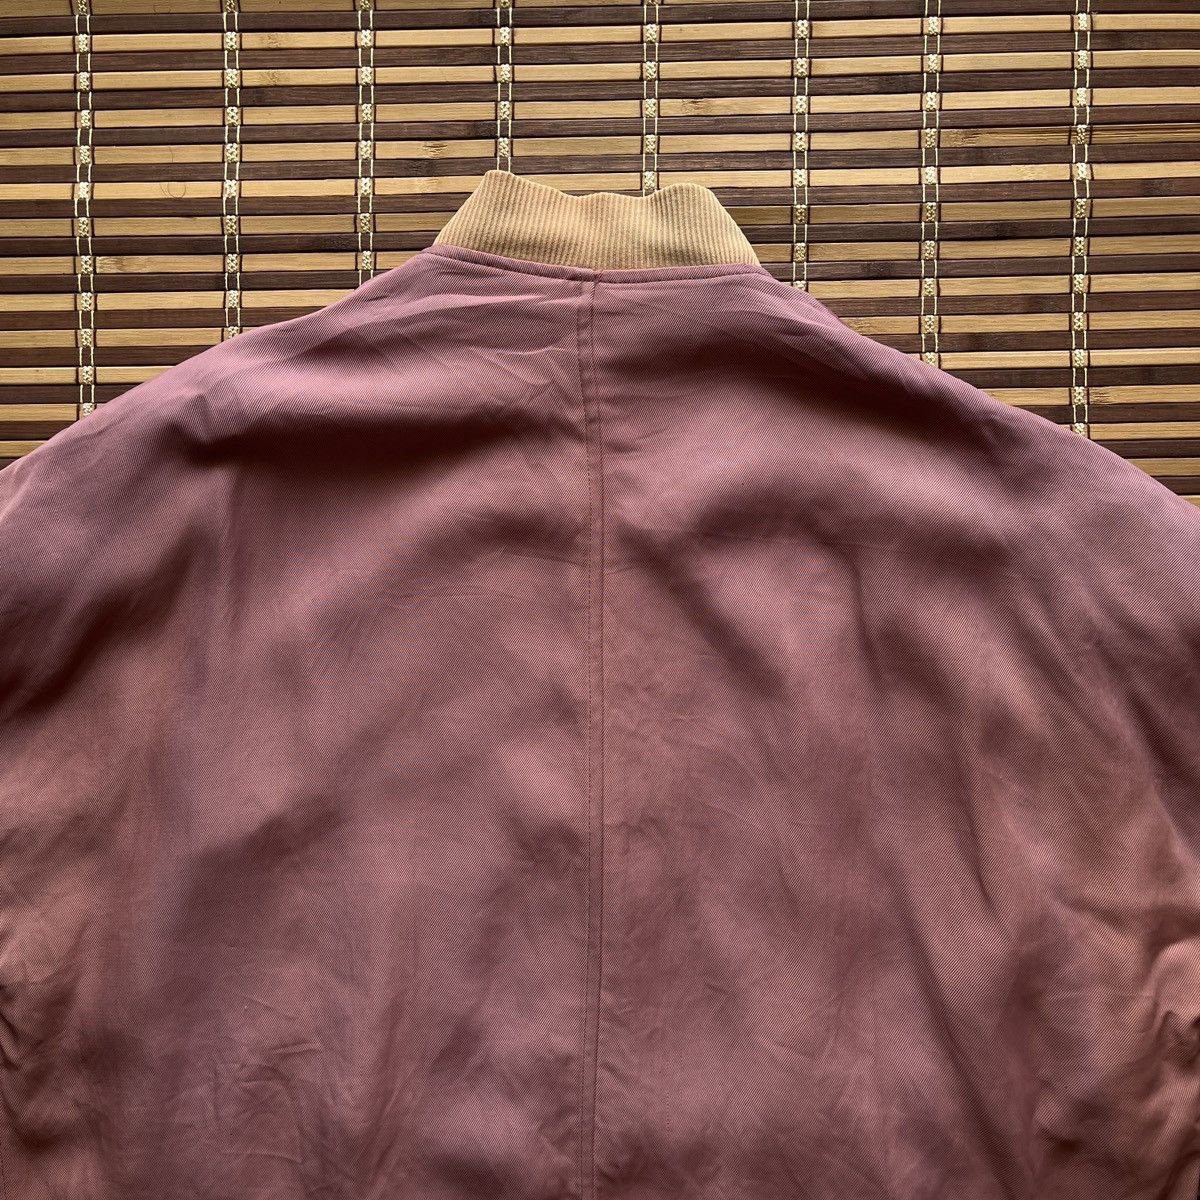 Vintage - Rei Kawakubo X Comme Des Garcons Baggy Jacket 1990s - 18